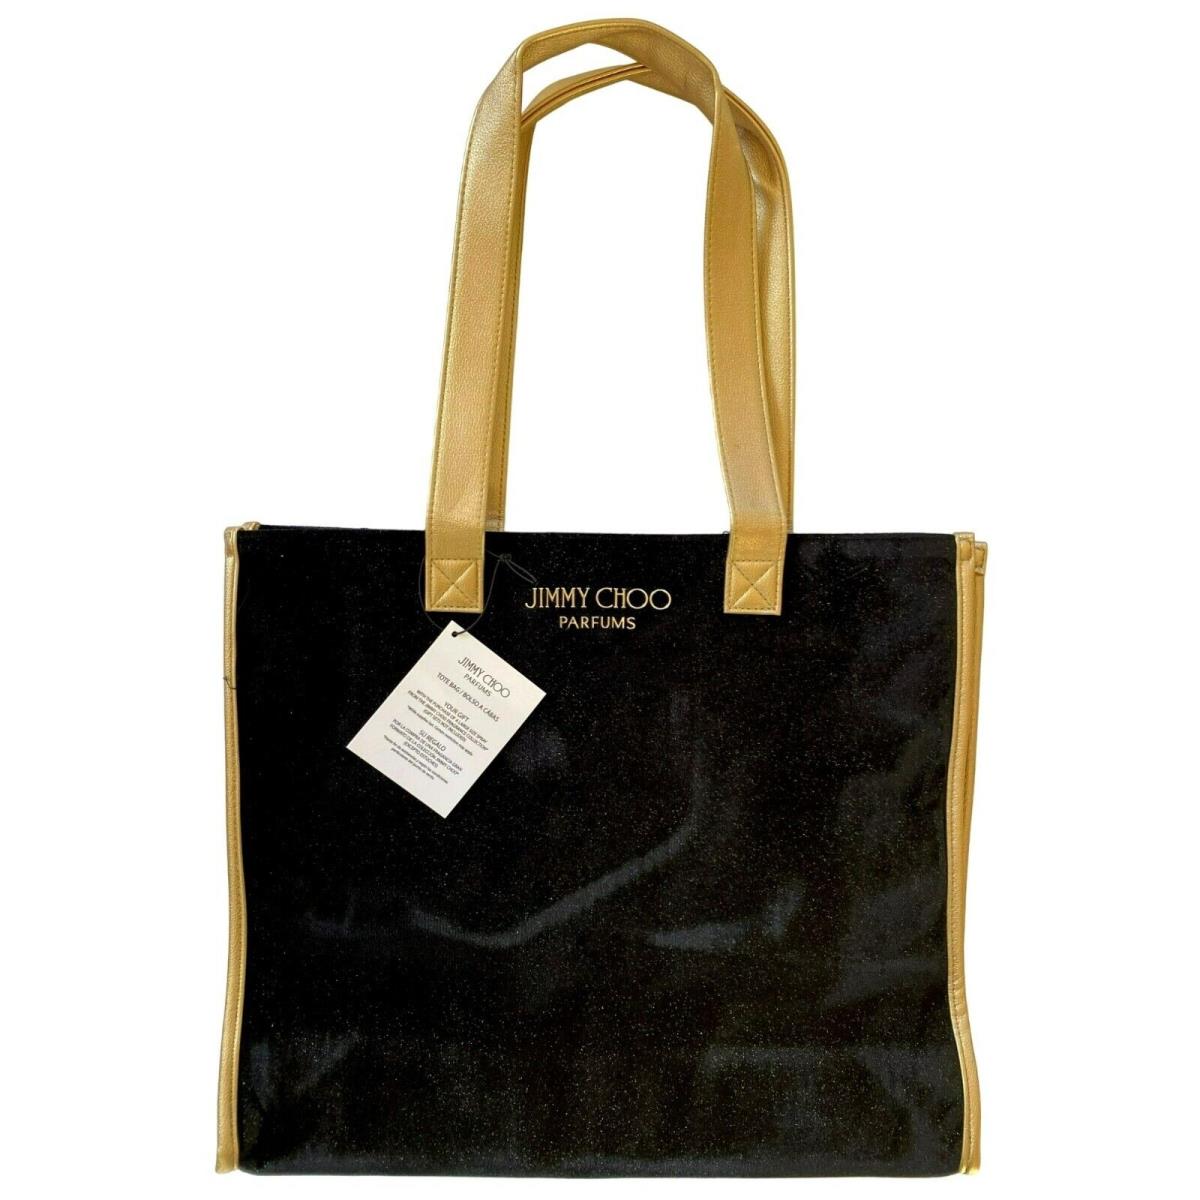 Jimmy Choo Perfume Tote Bag Weekender Shoulder Bag Black Gold Metallic